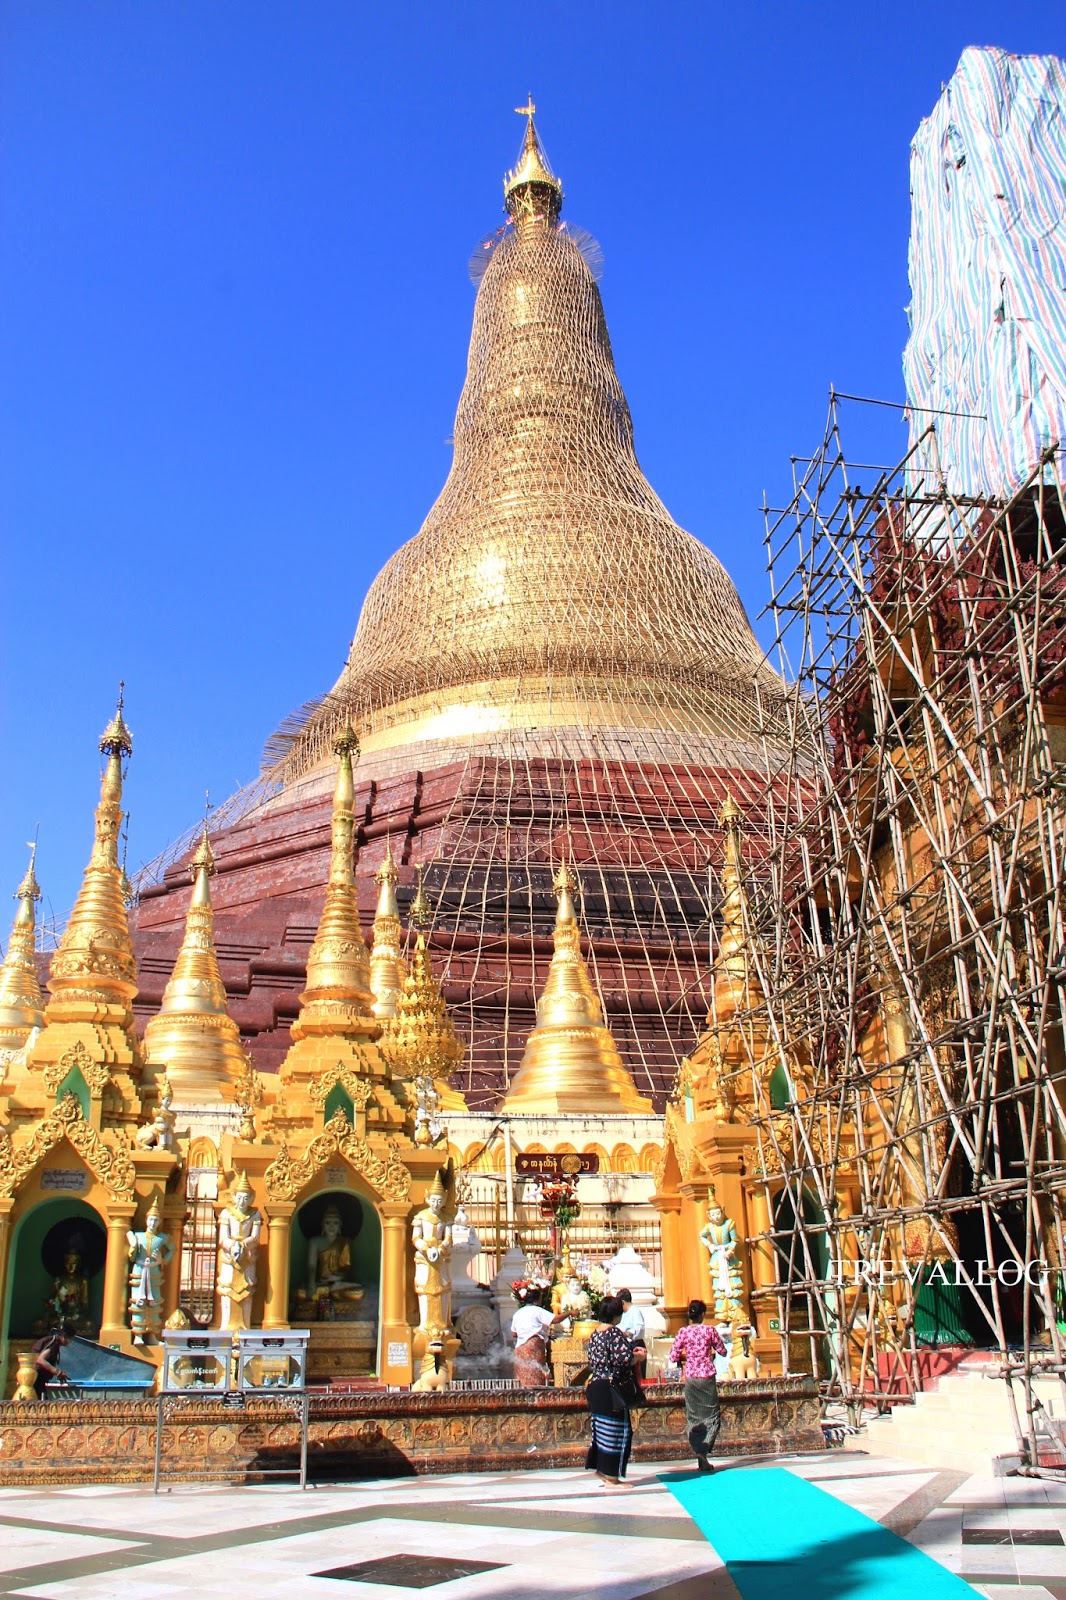 Shwedagon Pagoda under restoration